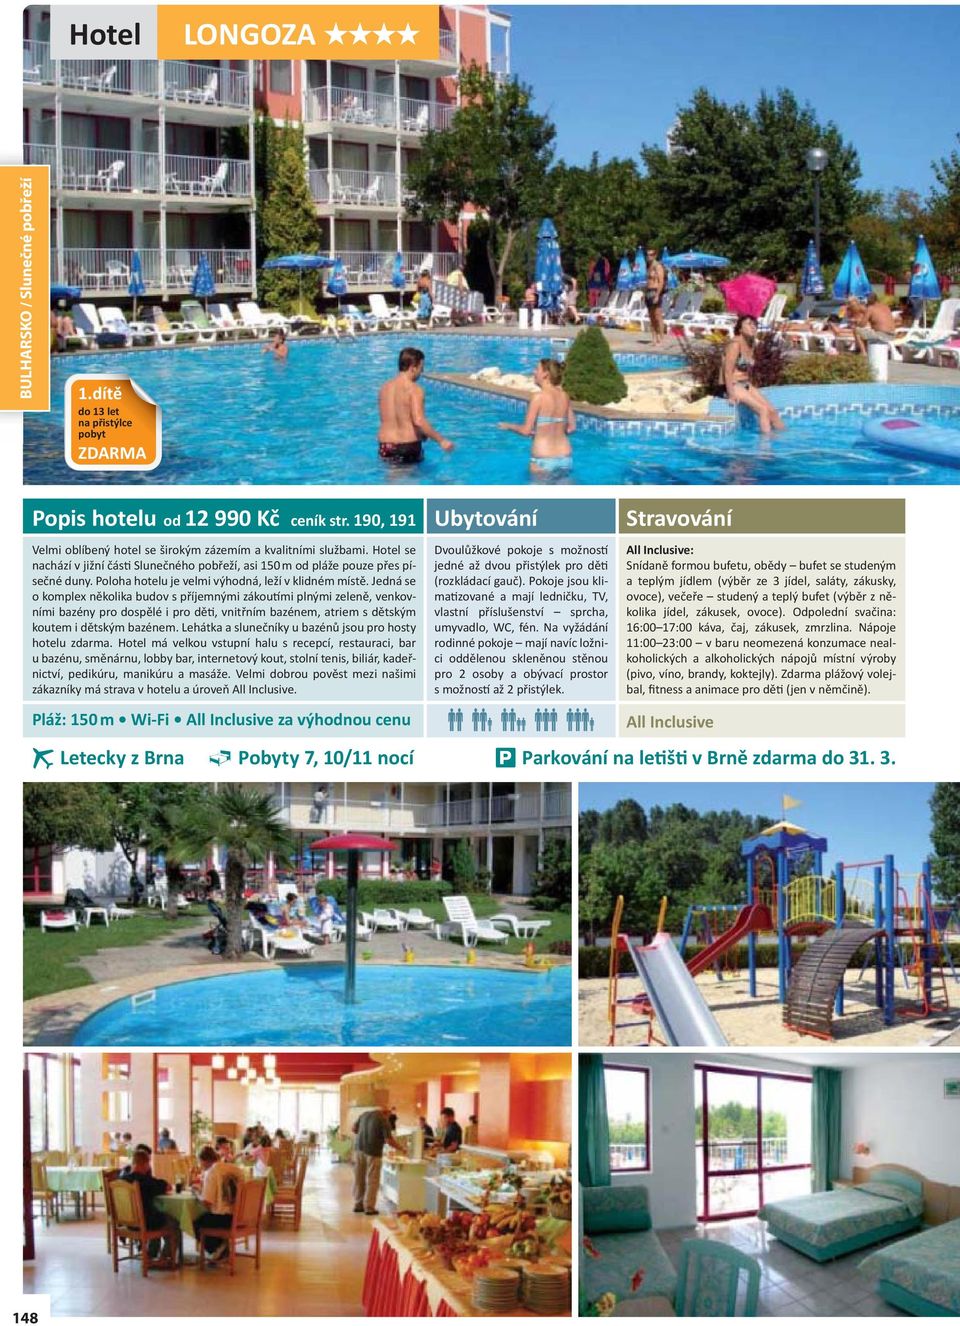 Jedná se o komplex několika budov s příjemnými zákoutími plnými zeleně, venkovními bazény pro dospělé i pro děti, vnitřním bazénem, atriem s dětským koutem i dětským bazénem.